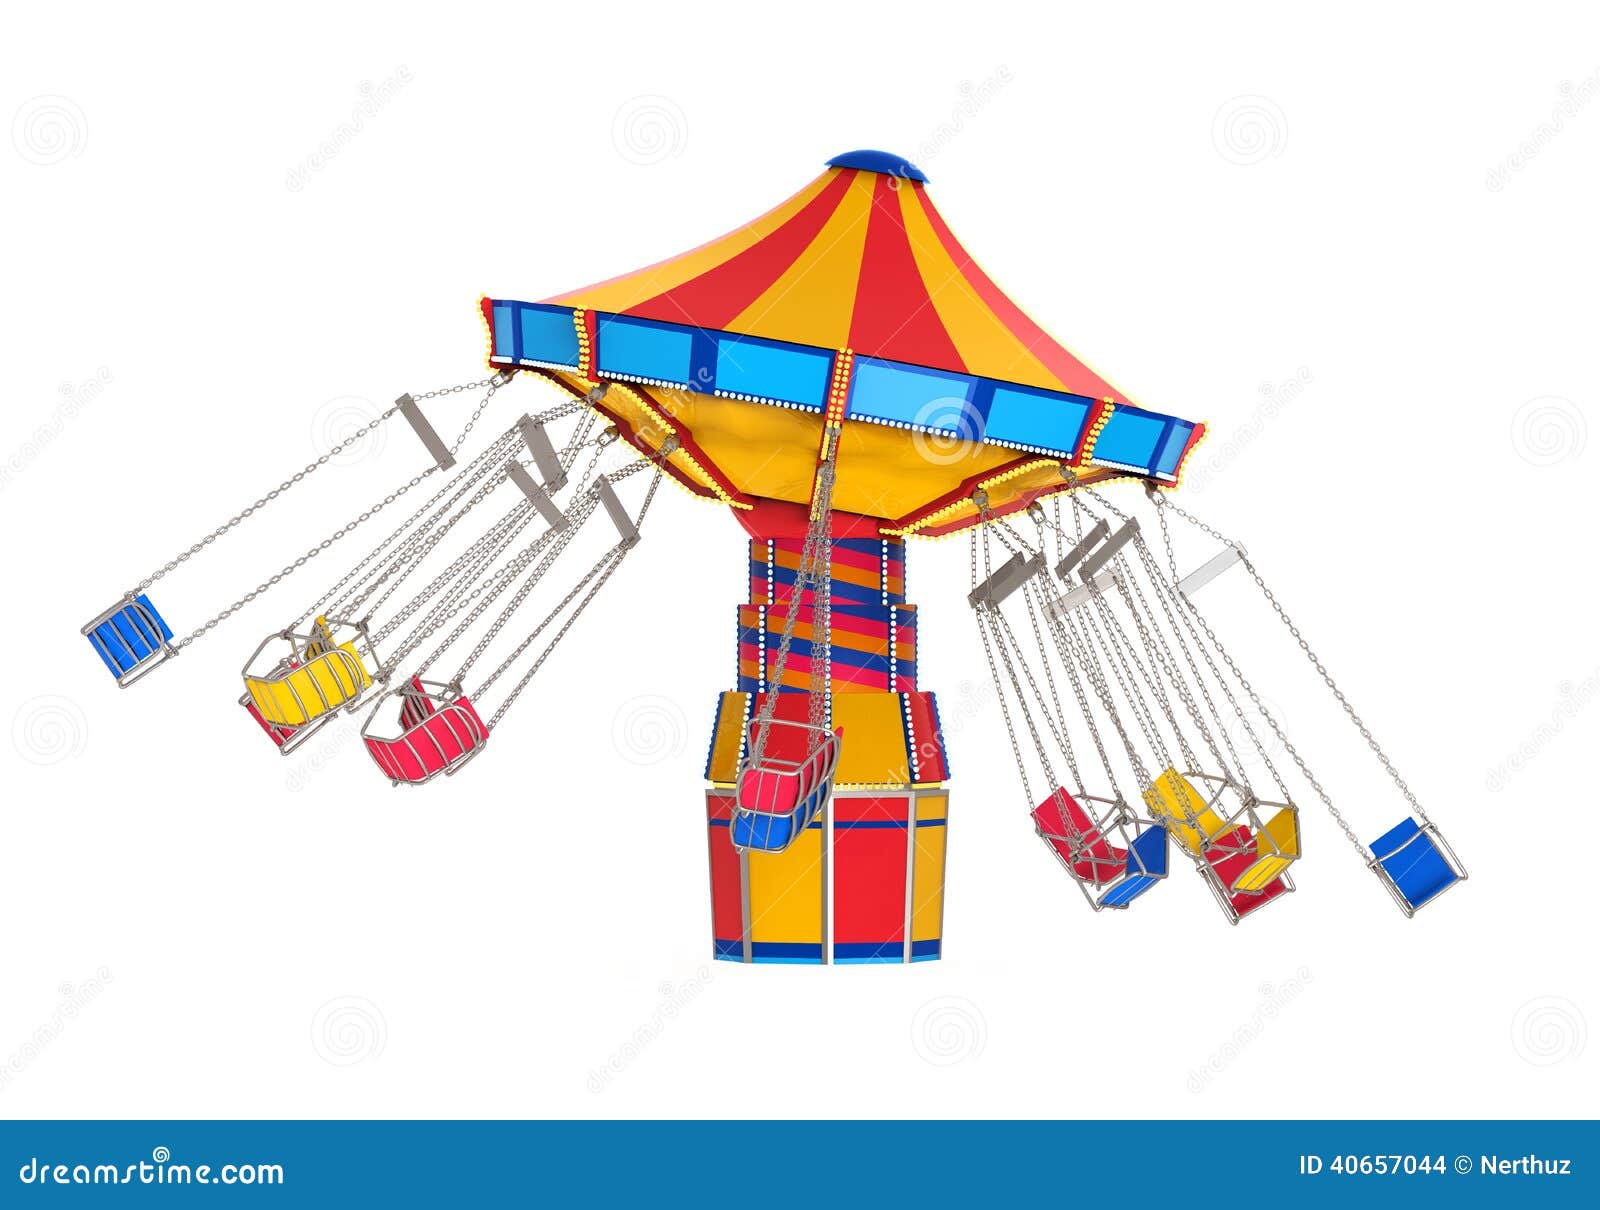 carnival swing ride